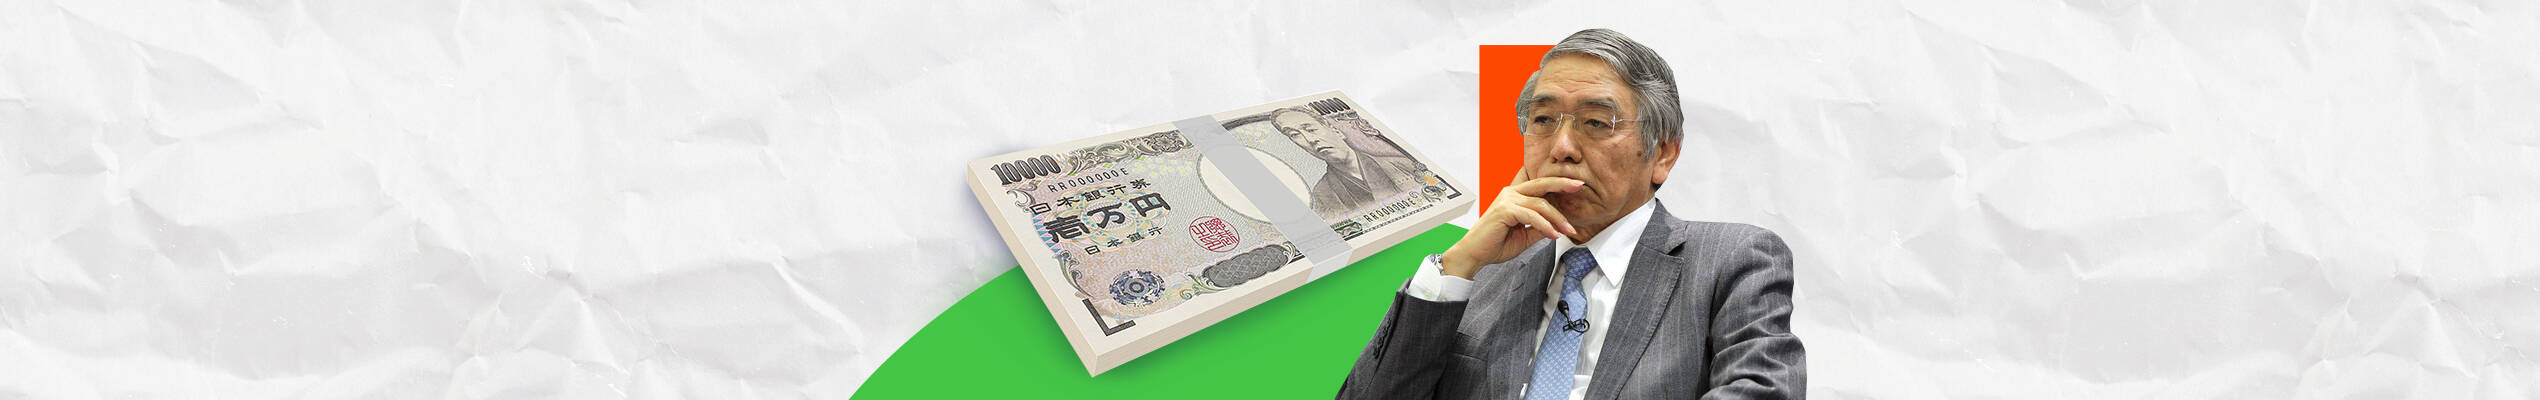 BOJ จะมีการพิจารณาสภาวะเศรษฐกิจครั้งใหม่